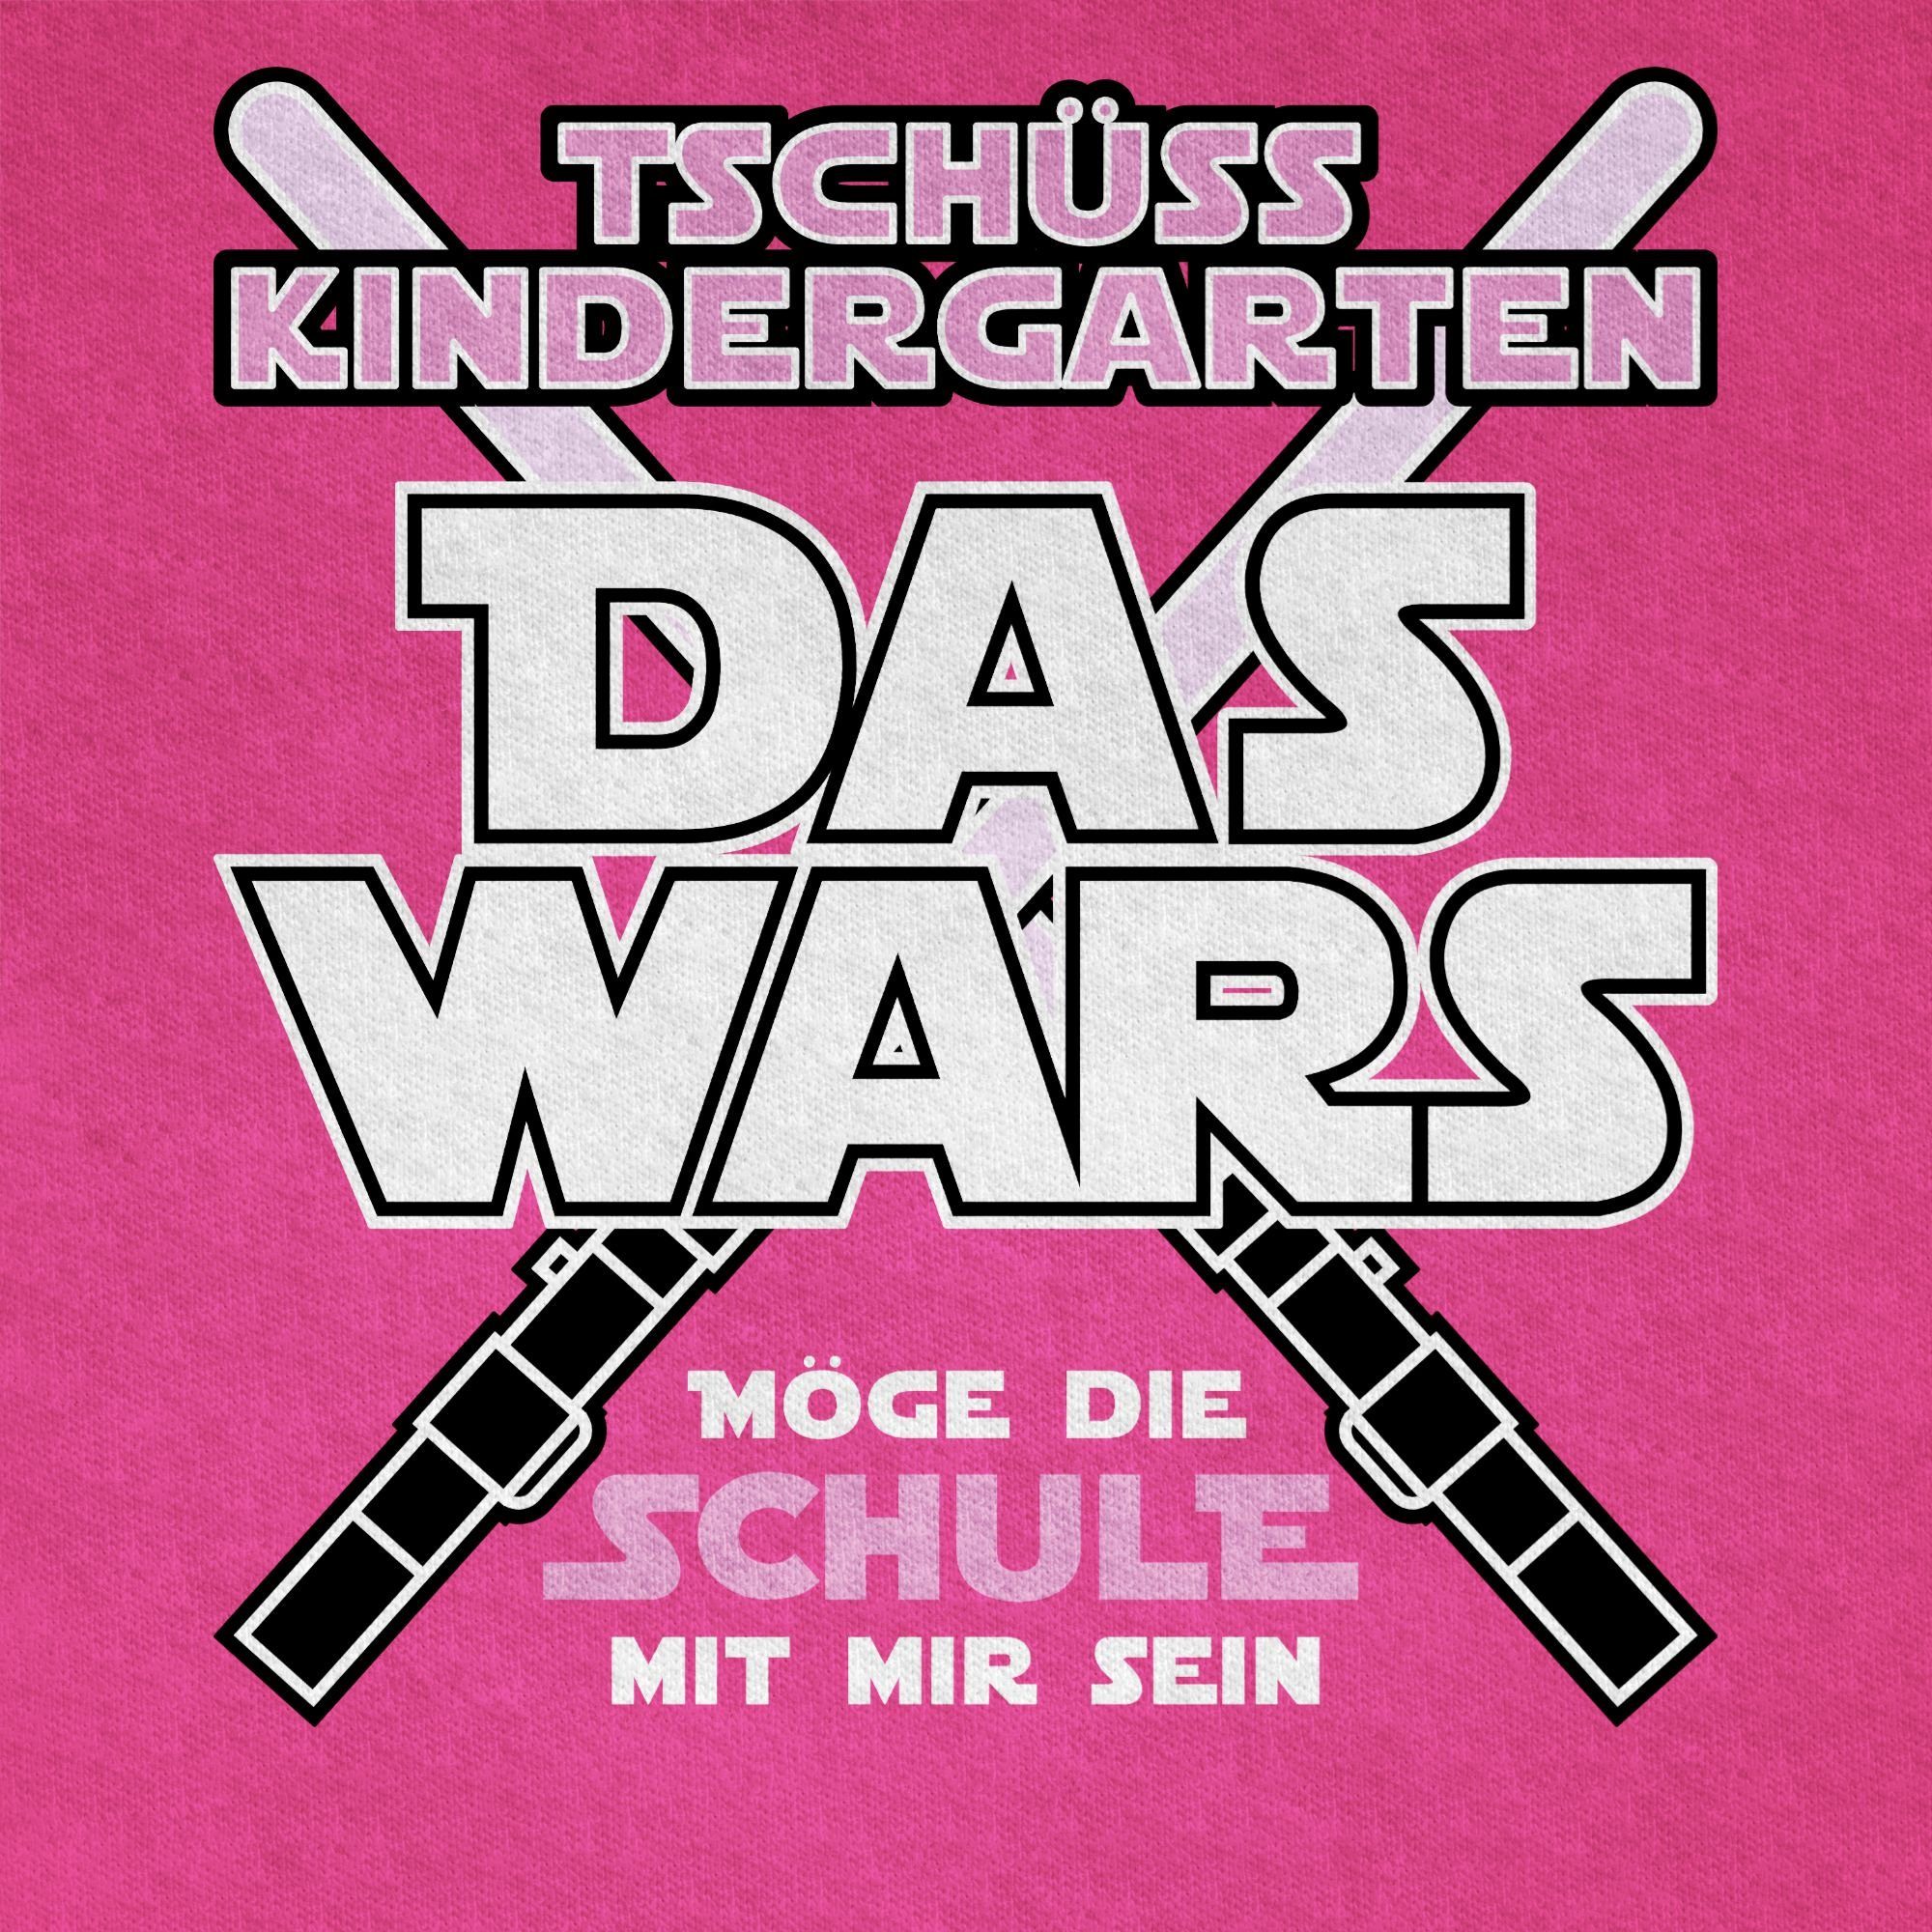 Shirtracer T-Shirt Das Fuchsia Rosa Junge 2 Einschulung Wars Schulanfang Geschenke Kindergarten